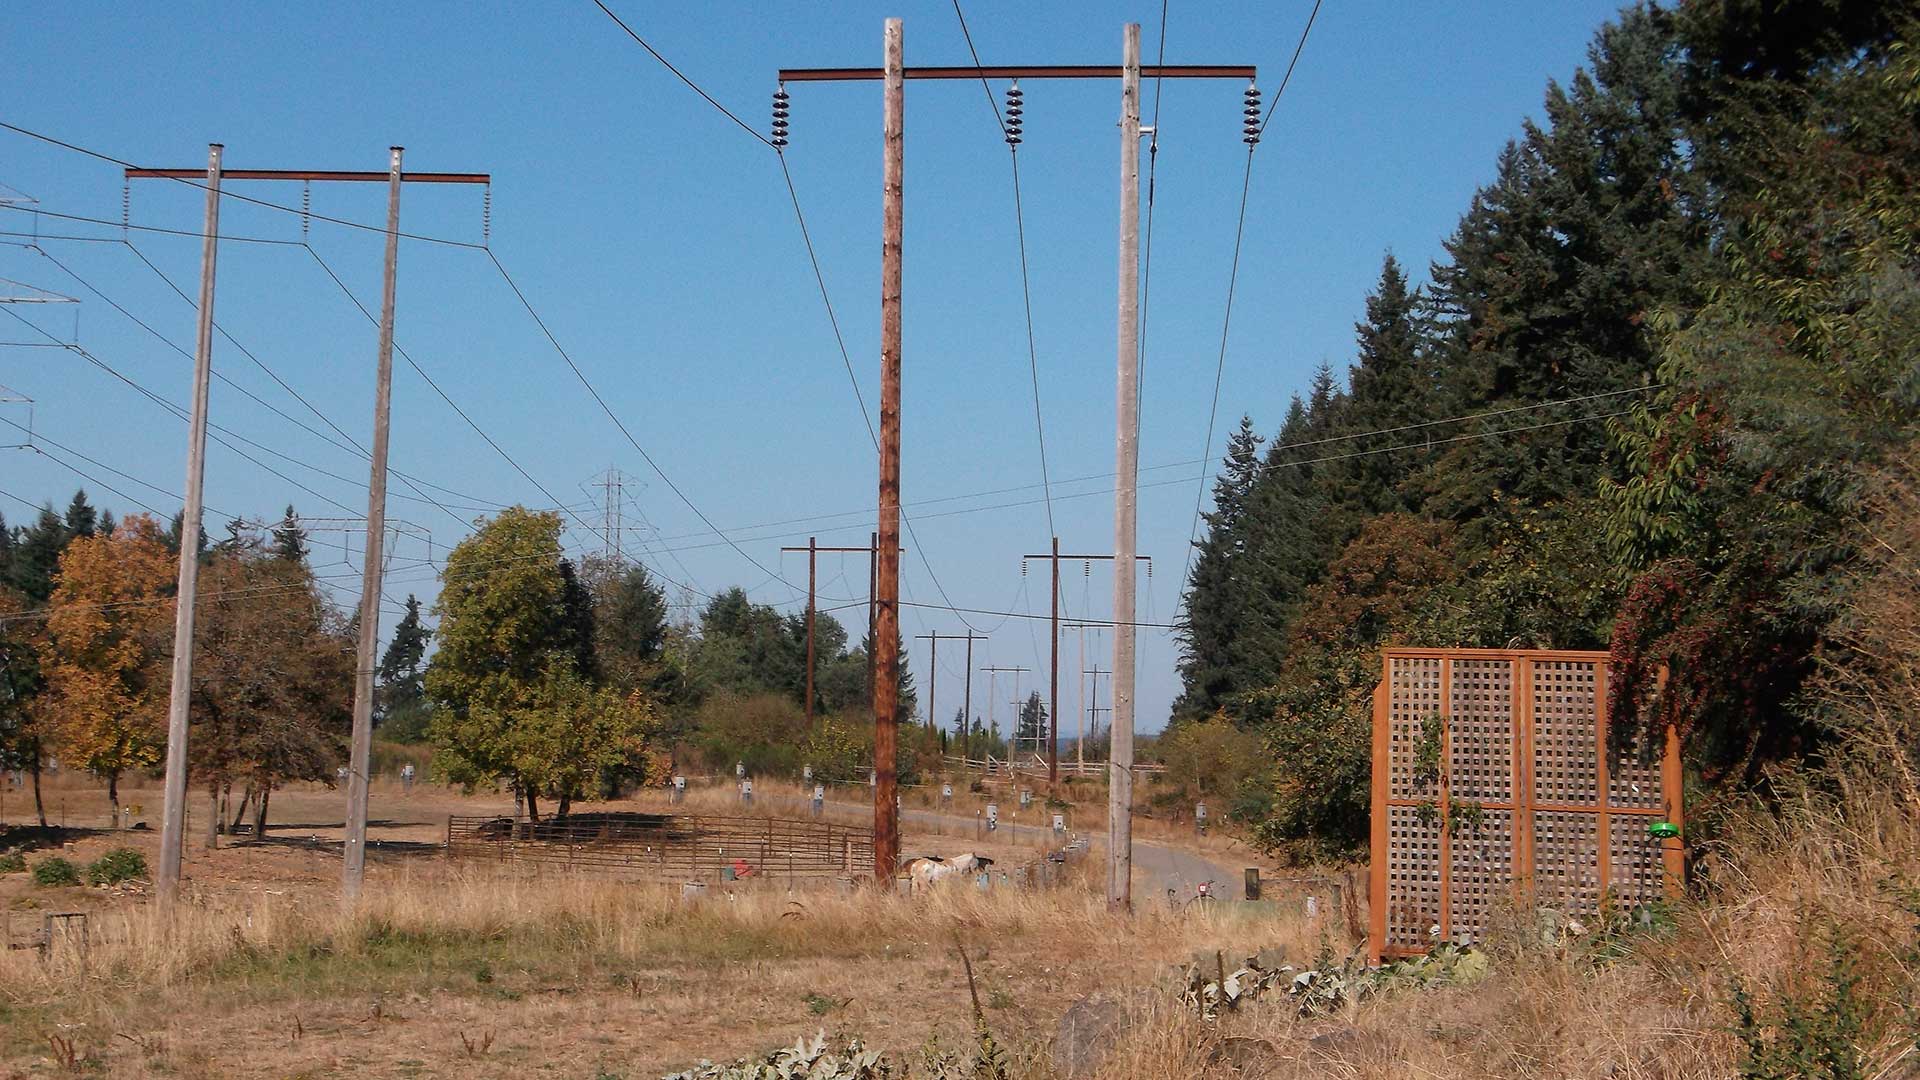 Keeler-Oregon City - transmission line